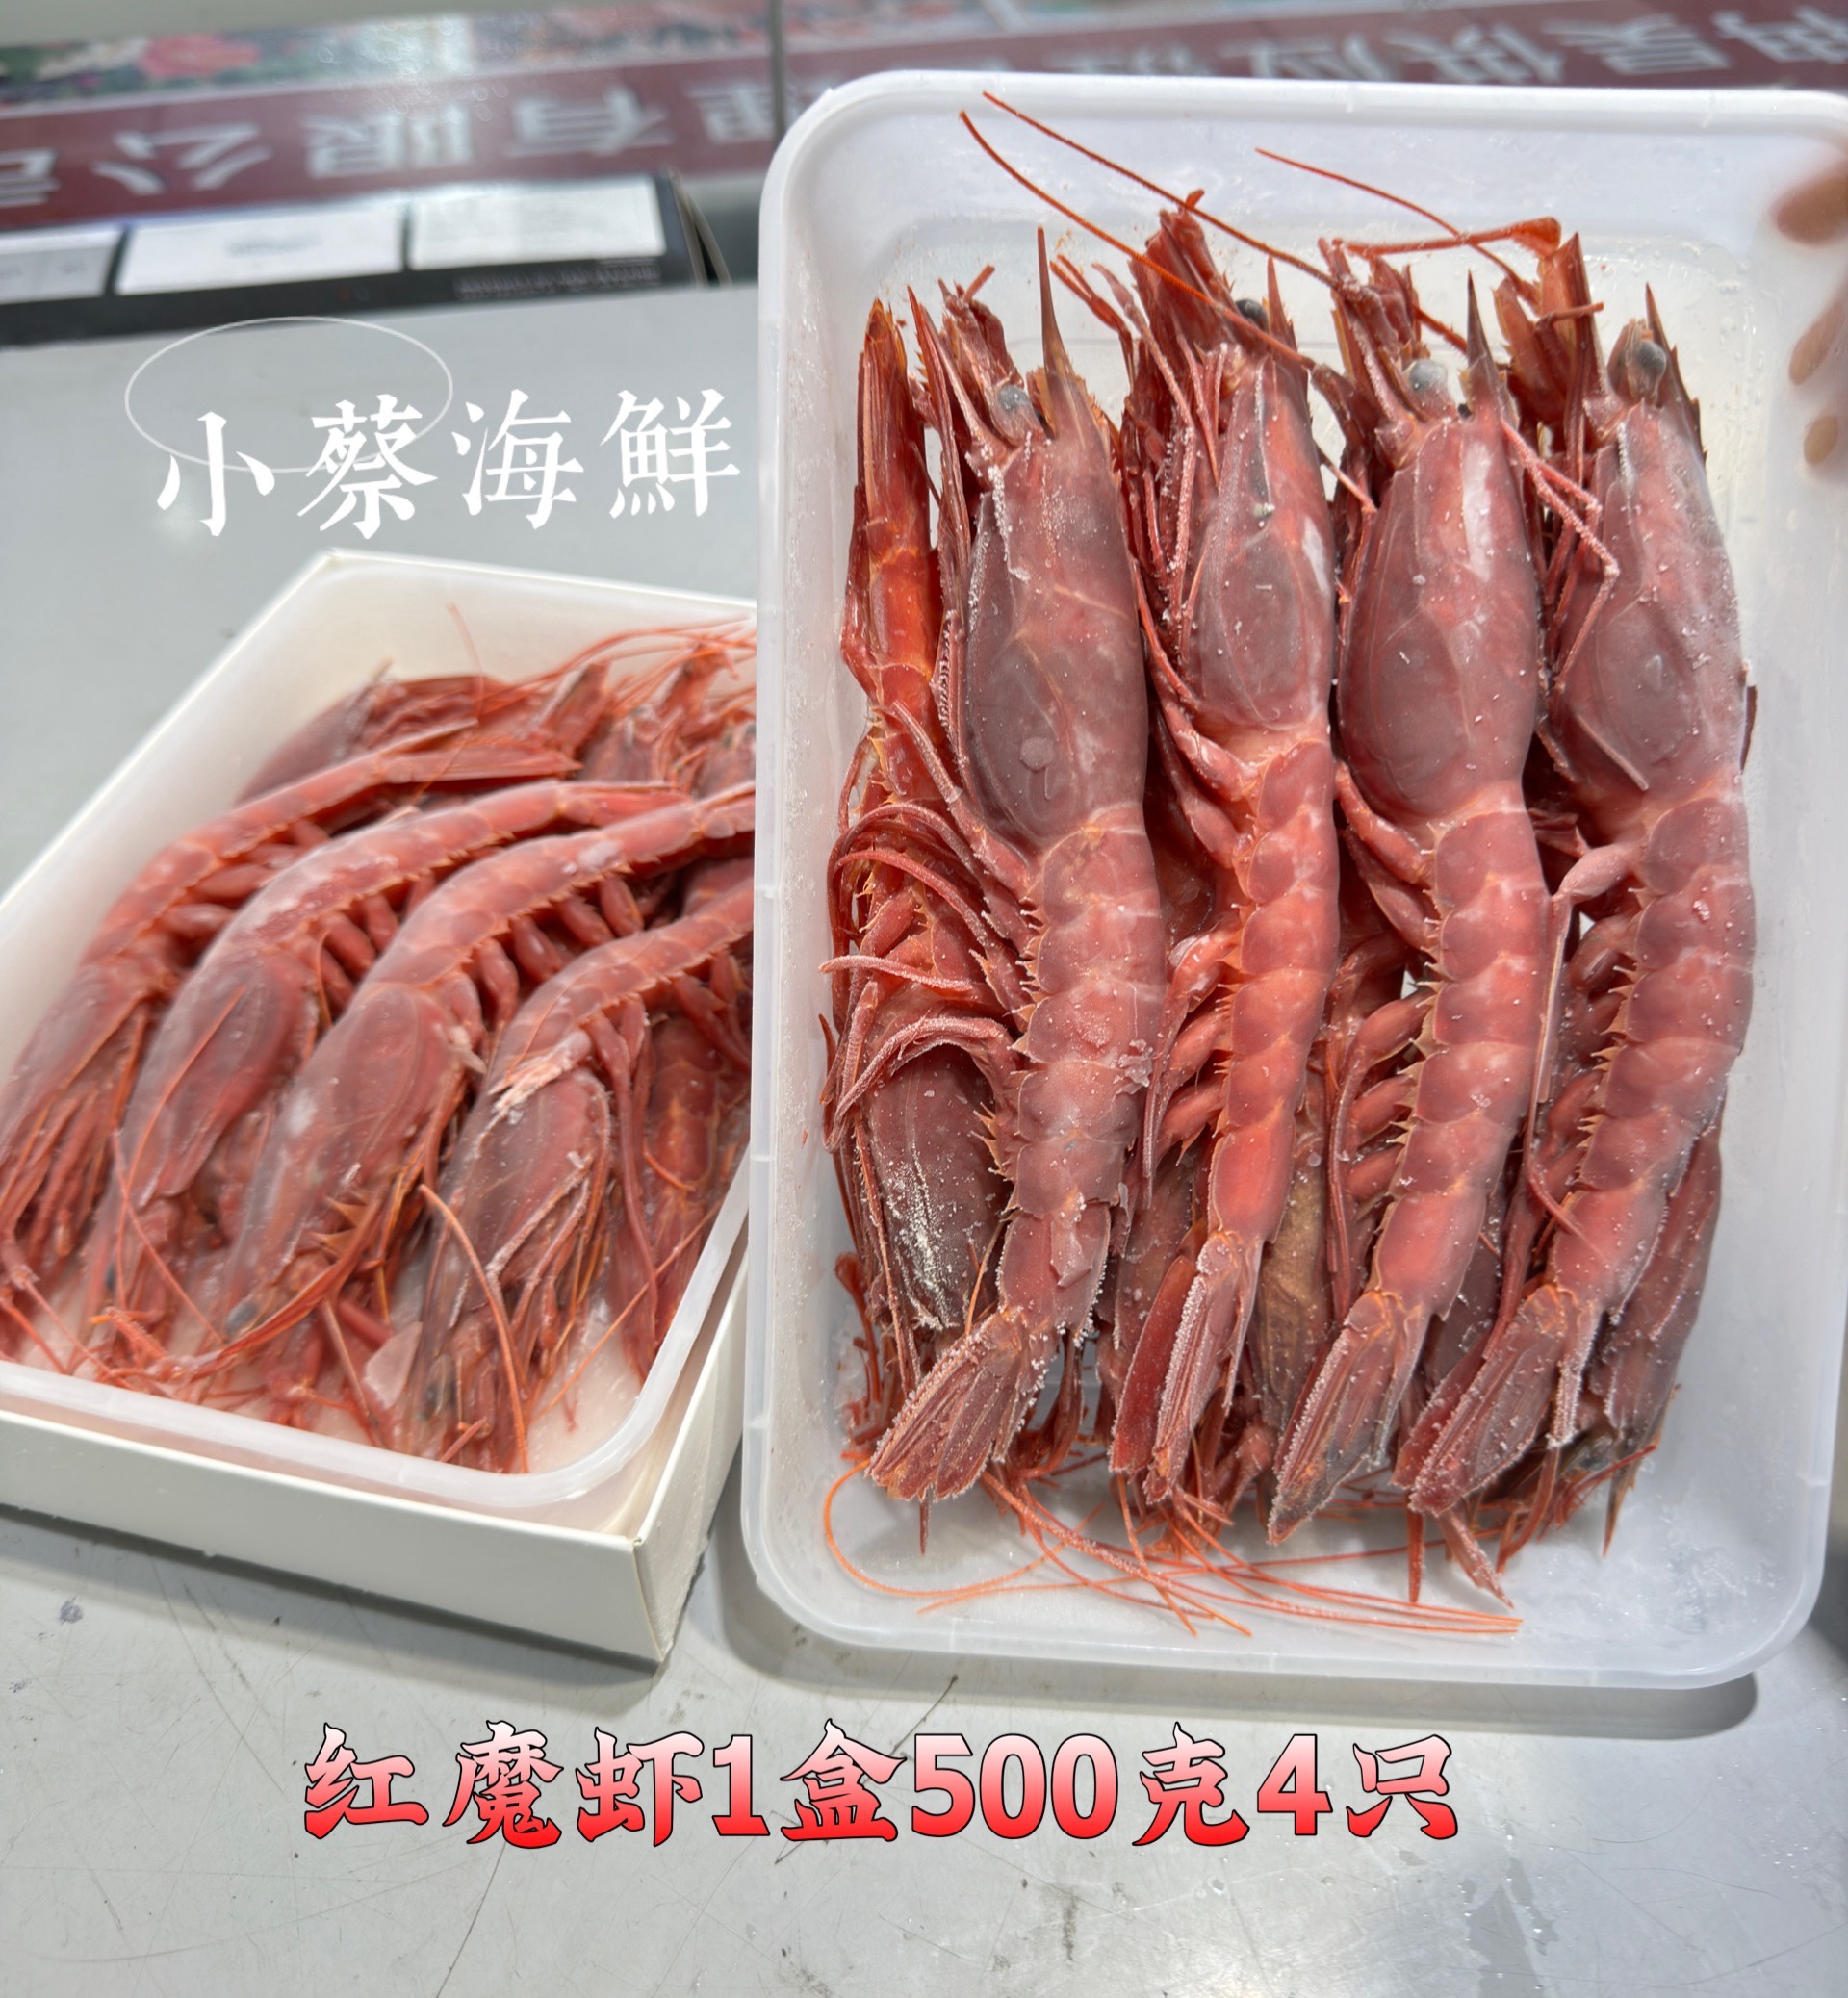 红魔虾刺身海鲜水产大虾绯红虾刺身非胭脂虾牡丹虾 500克1盒4只